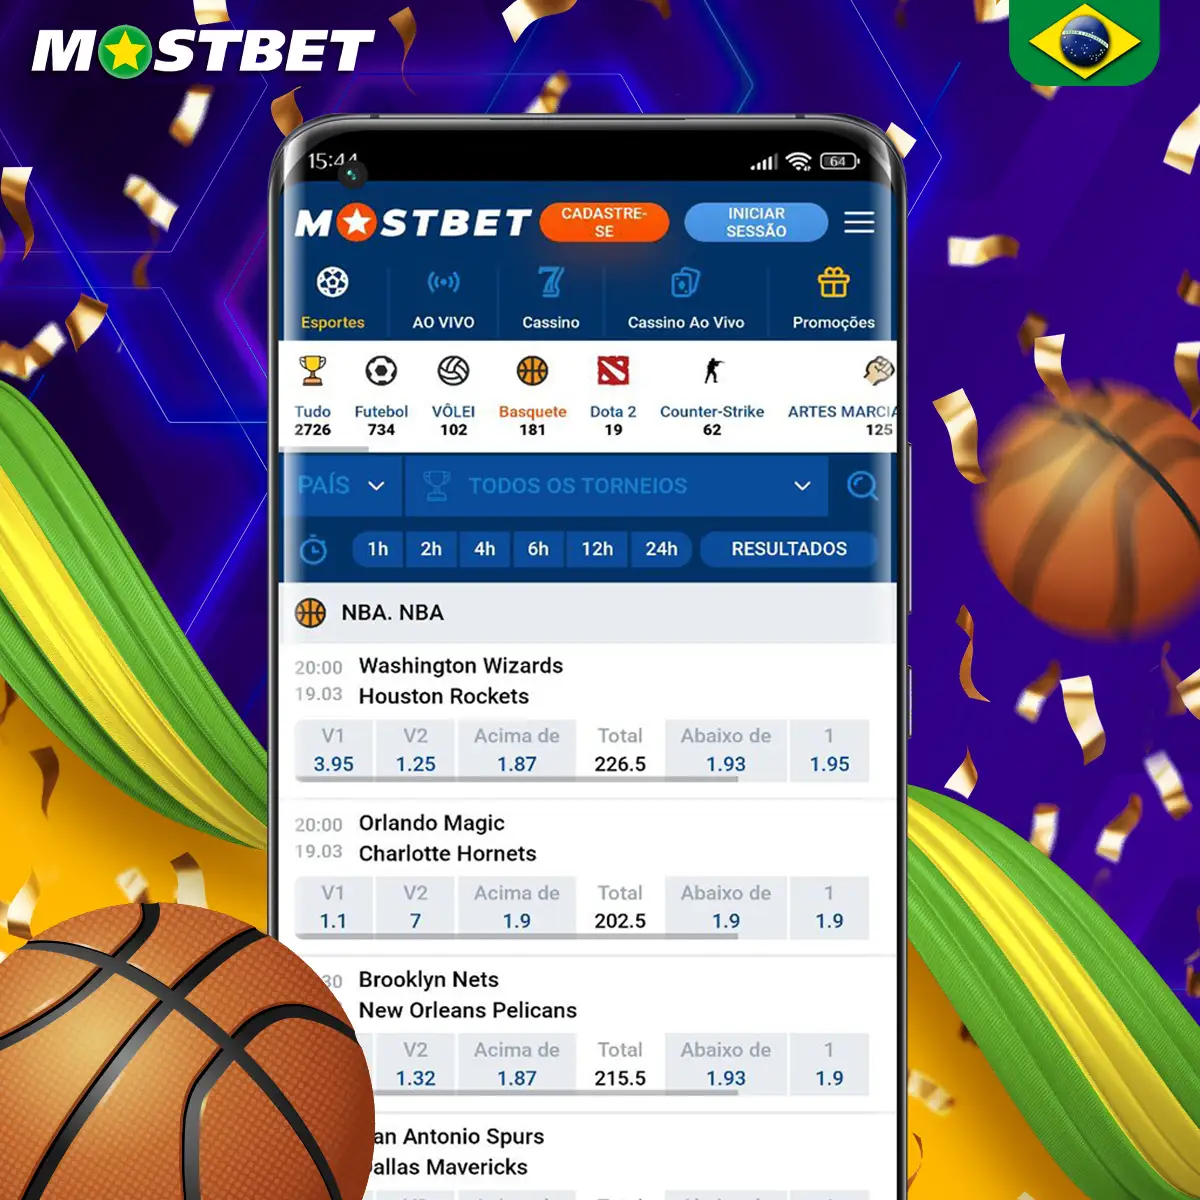 Opções de apostas em basquete eletrônicos na plataforma Mostbet.